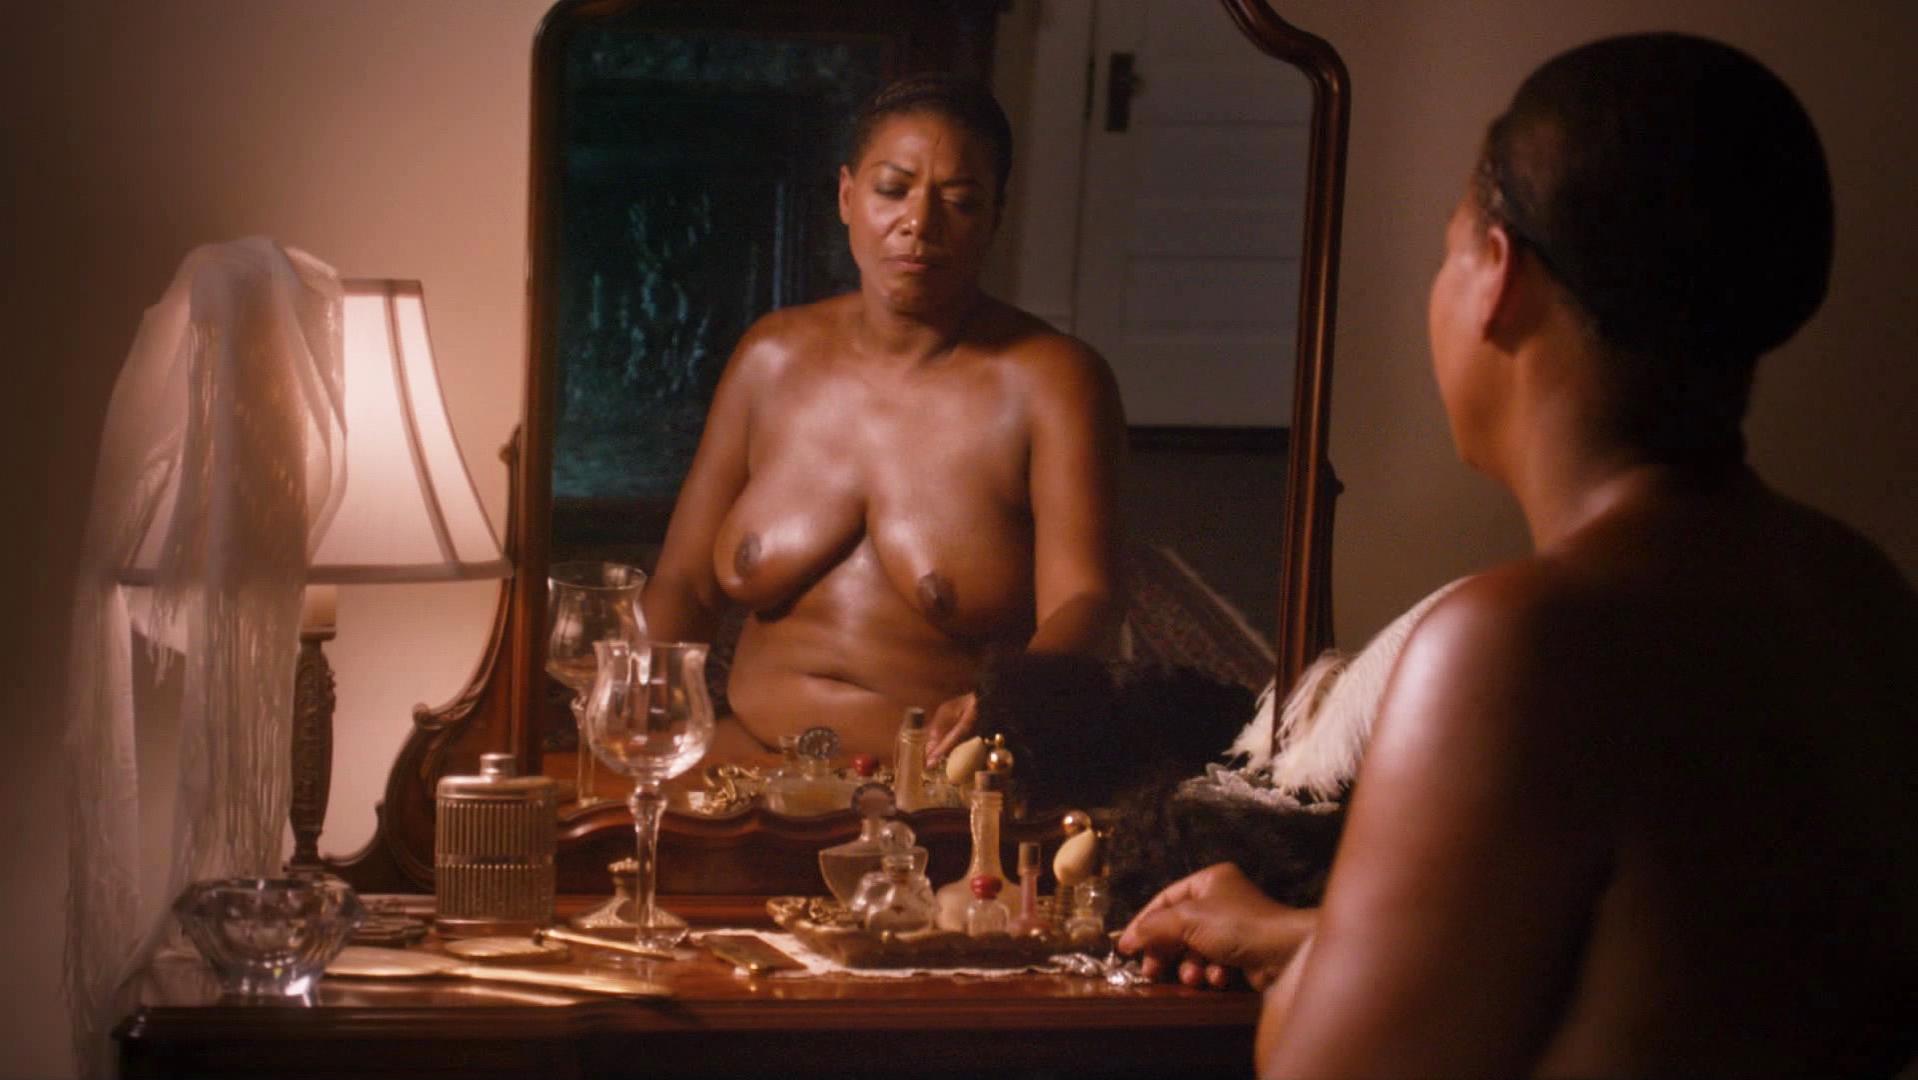 Nude Video Celebs Queen Latifah Nude Bessie 2015